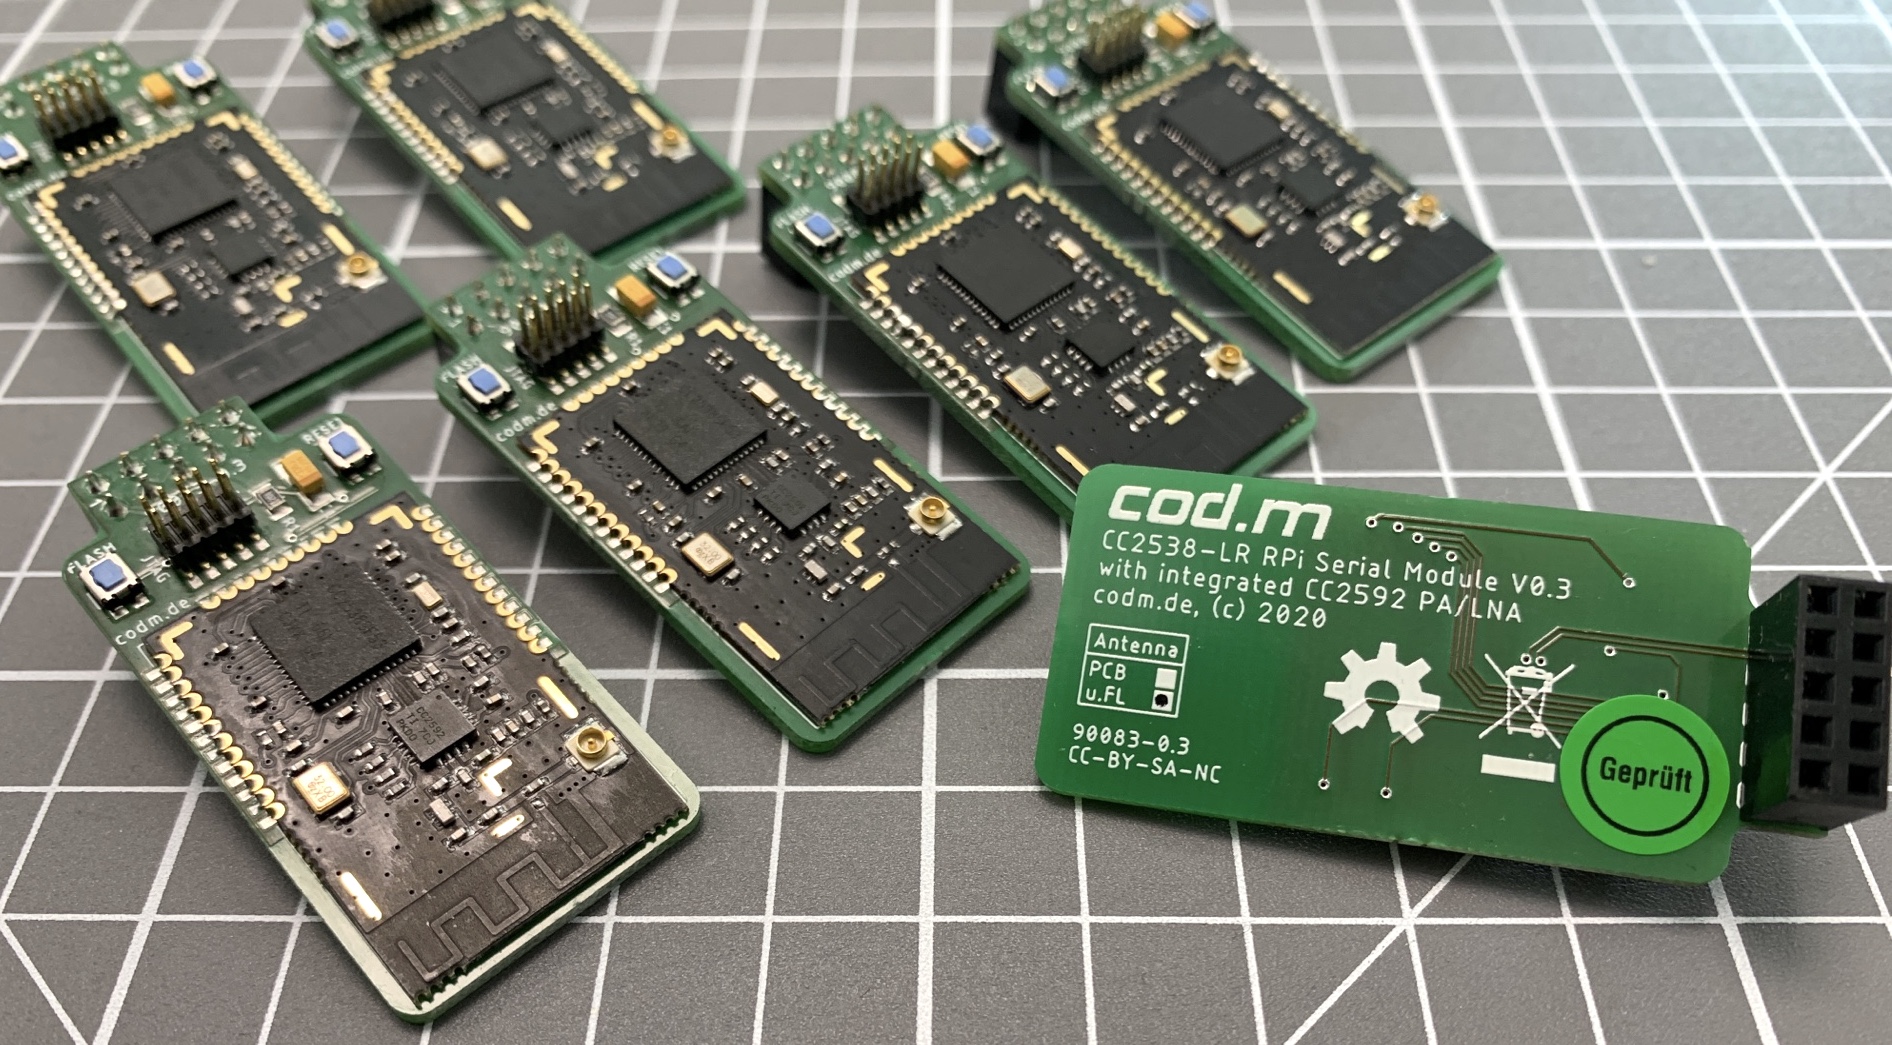 cod.m CC2538 ZigBee Raspberry Pi Module PCB's